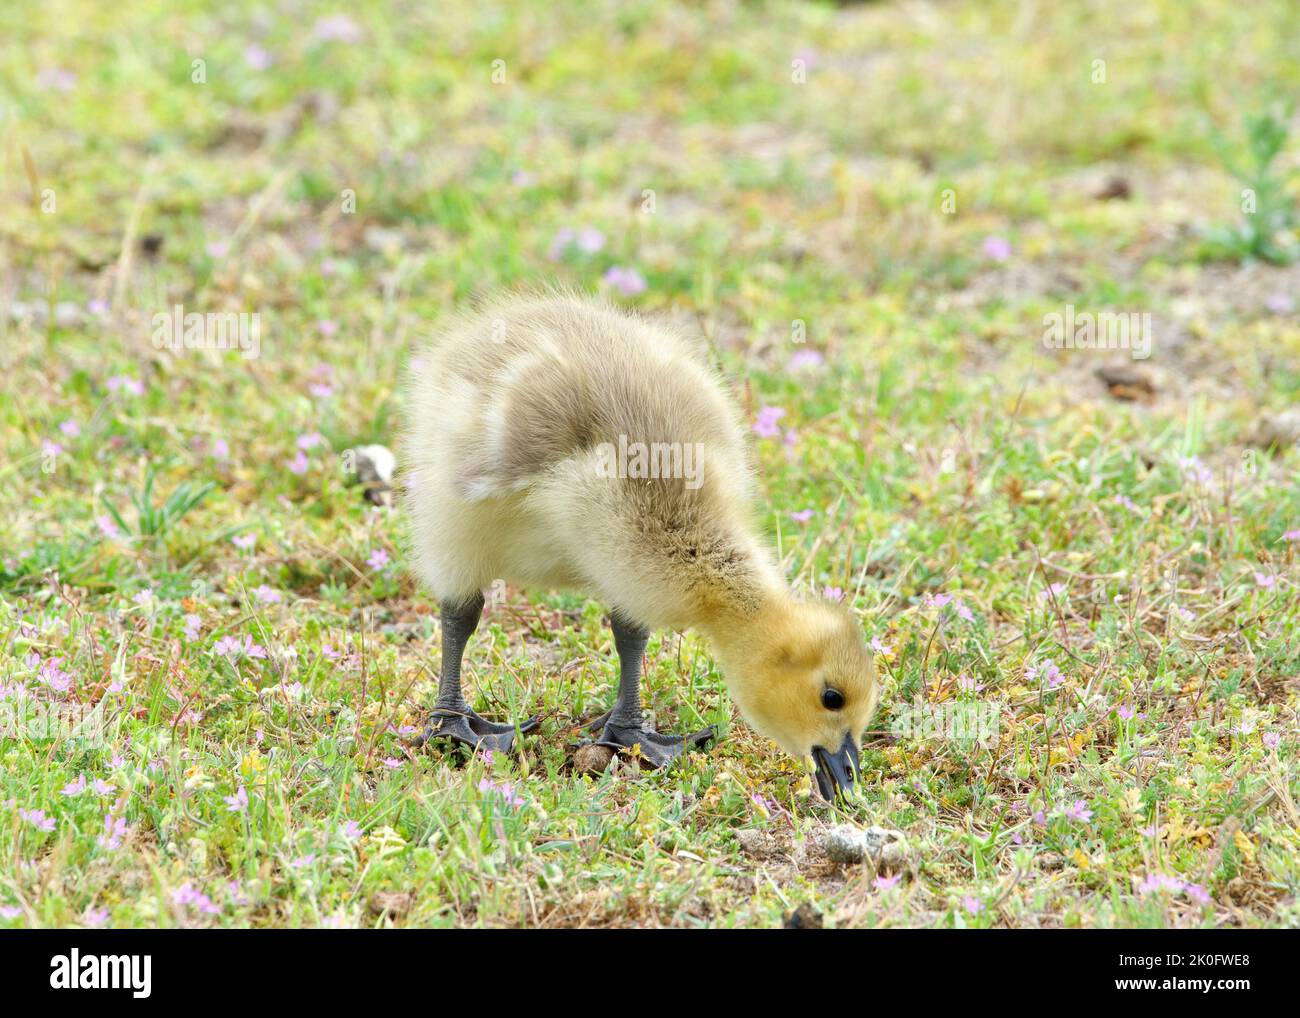 Gros plan sur le gosling, bébé oie du Canada, mangeant de l'herbe dans un parc de la ville. Banque D'Images